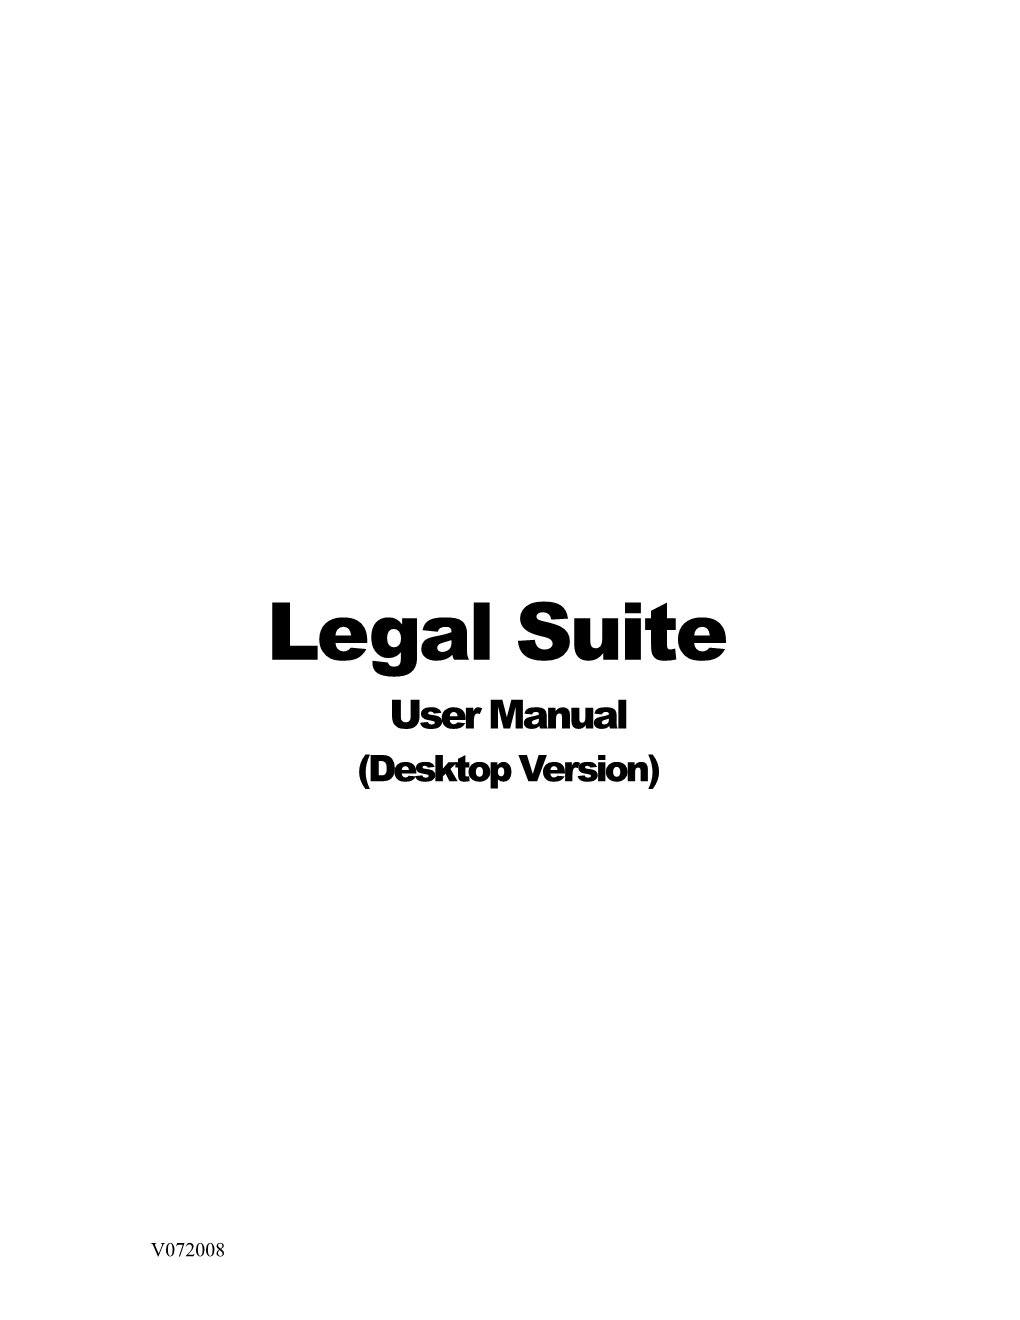 Legal Suite (Desktop Version)